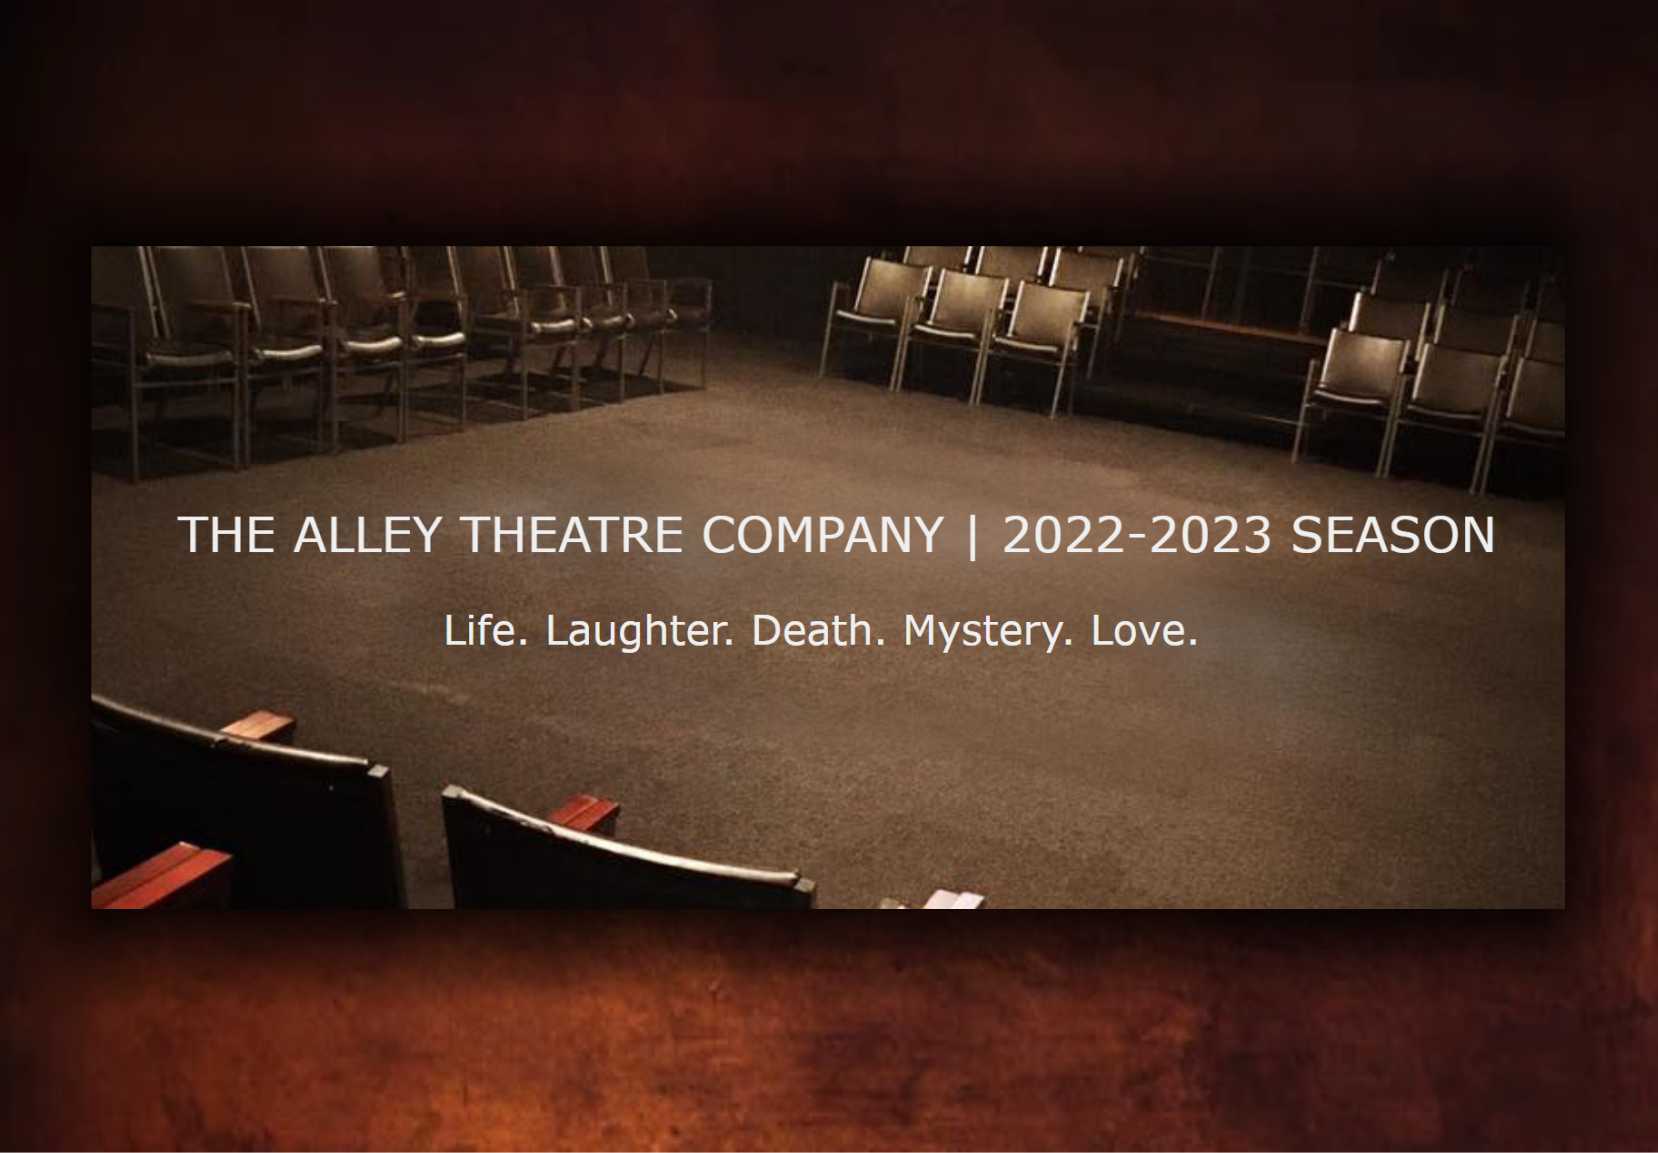 OUR SEASON The Alley Theatre Company